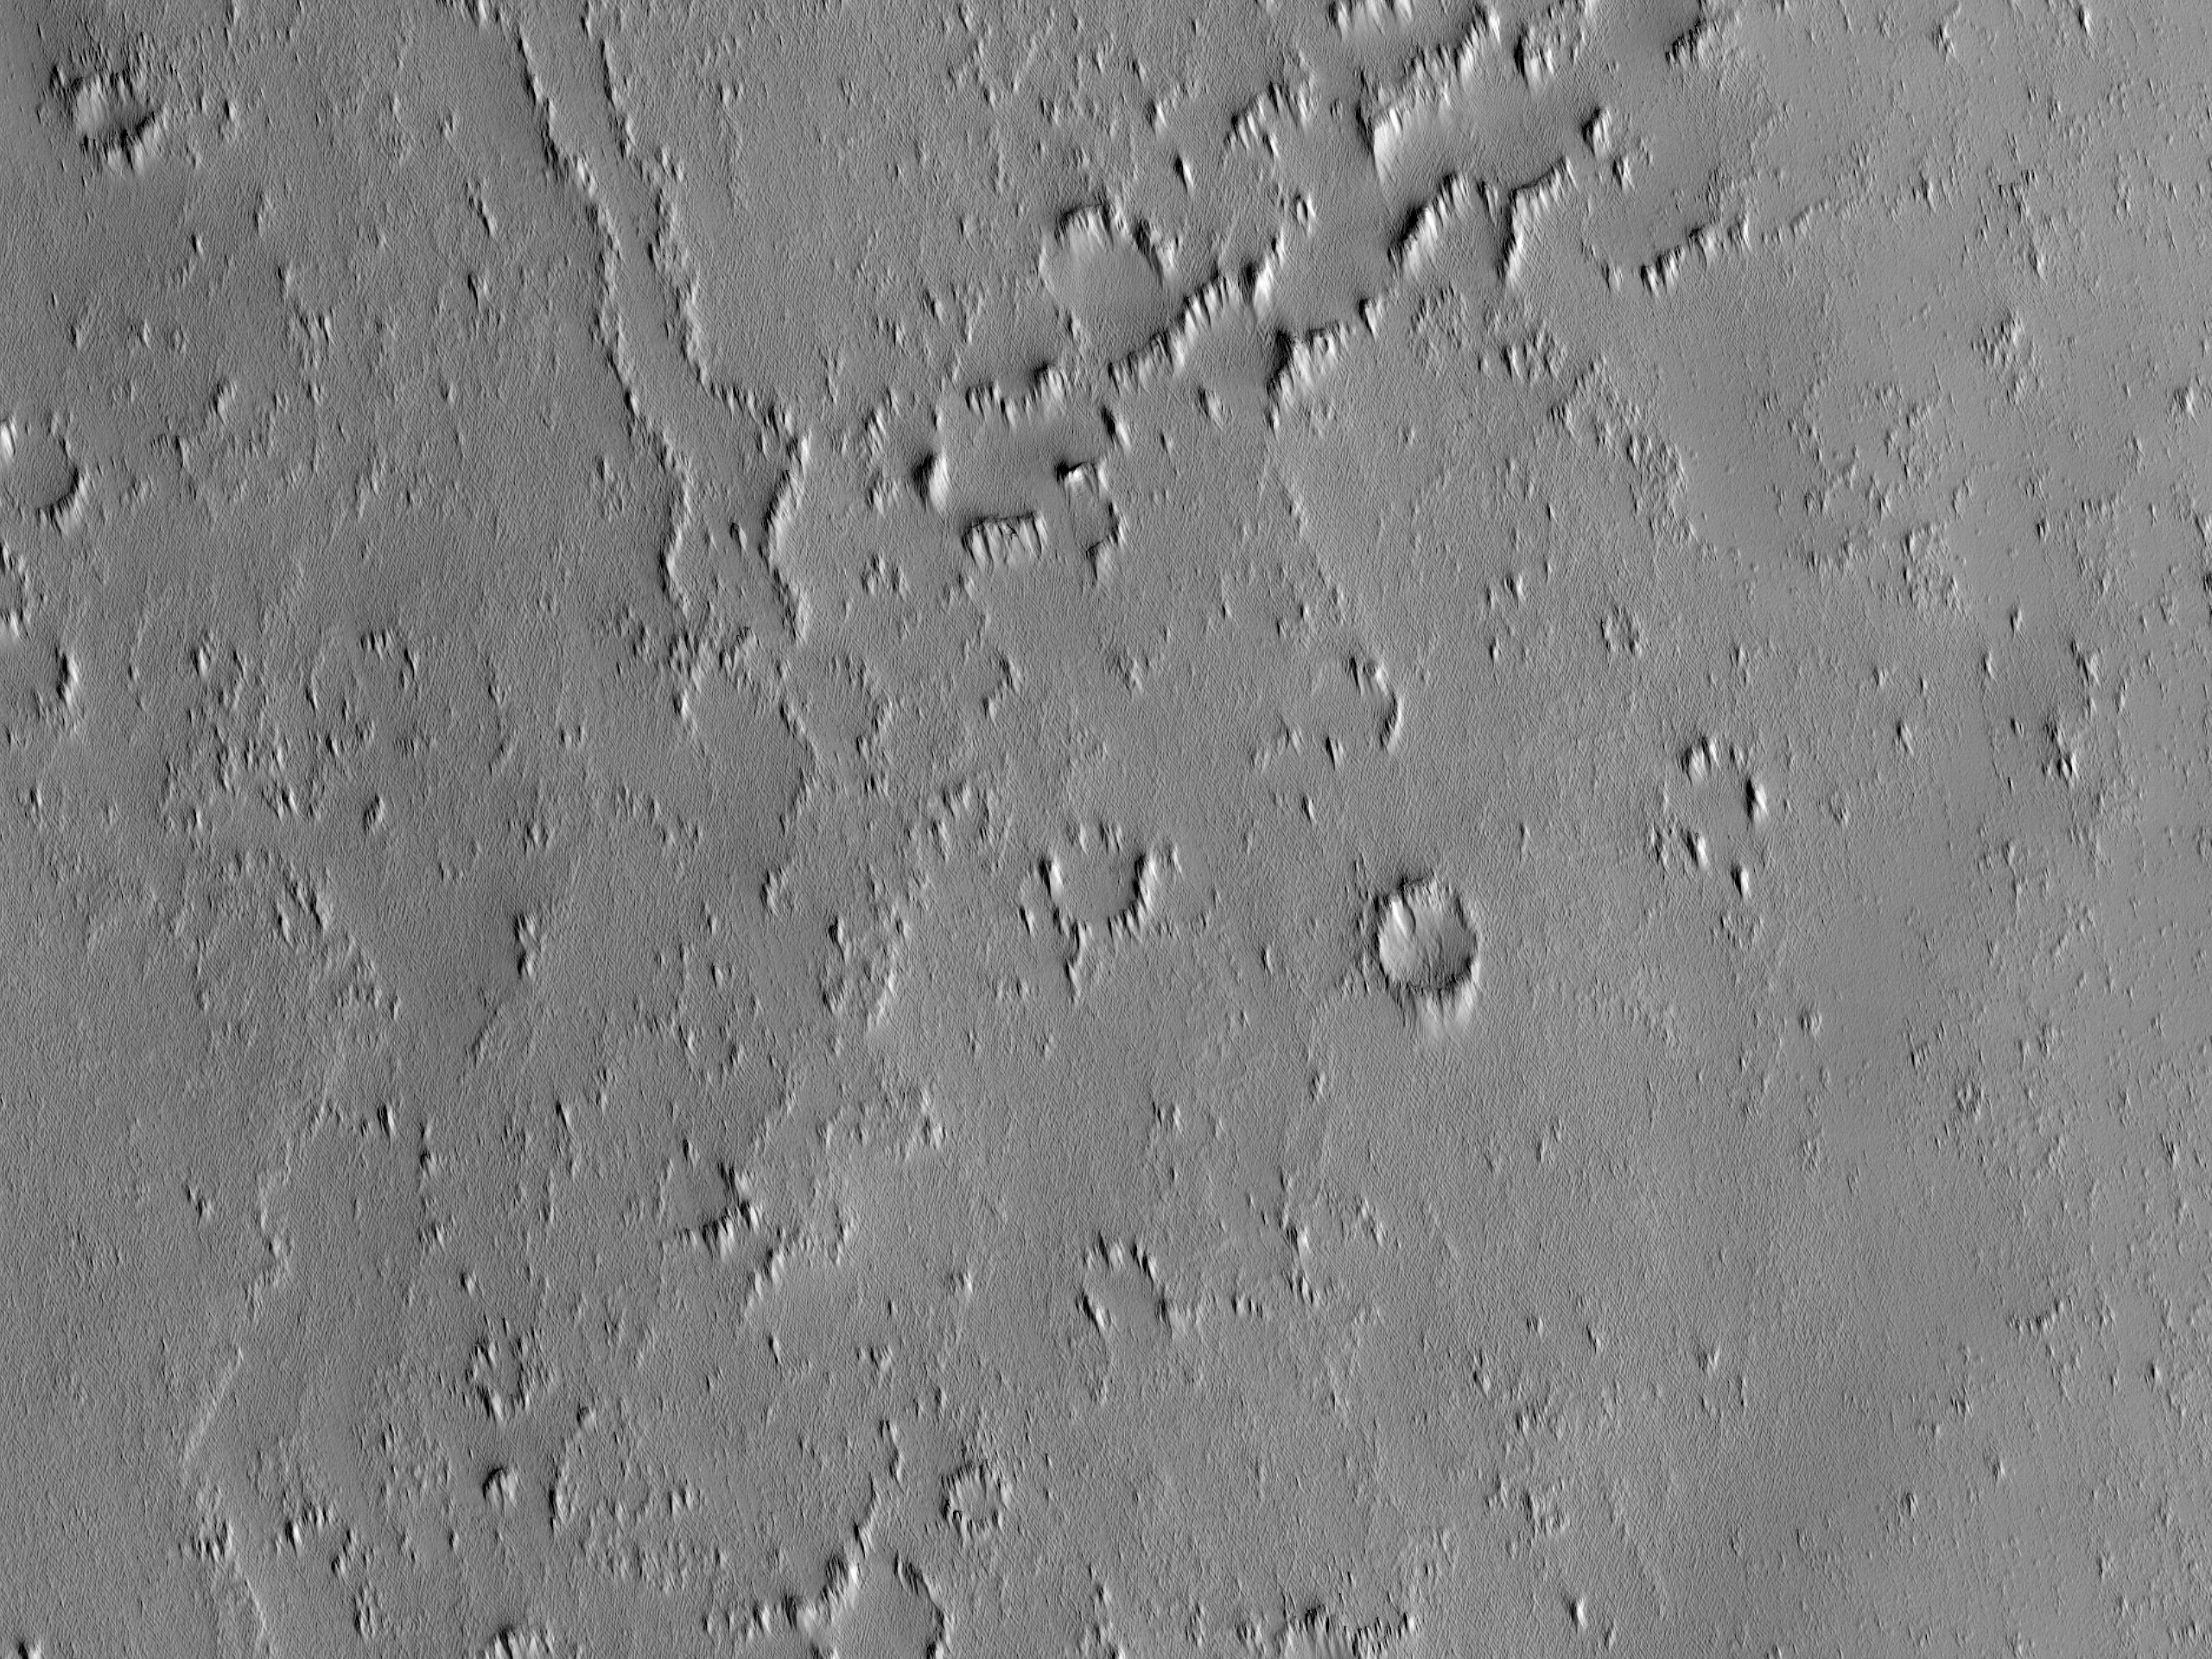 Beobachtung einer neuen Kratereinschlagstelle